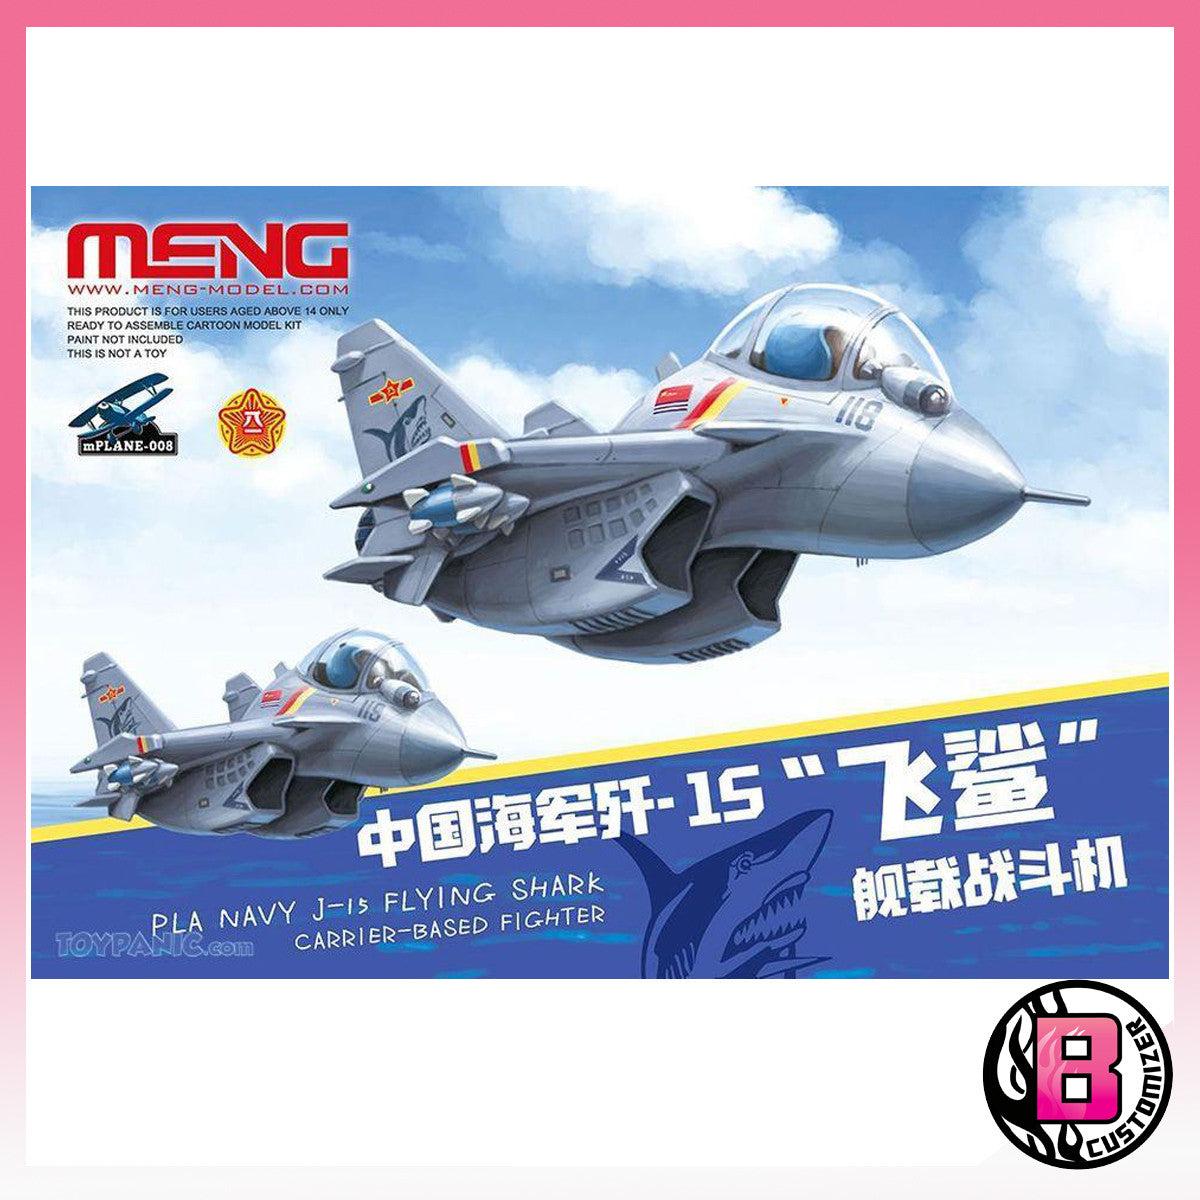 MENG PLA Navy J-15 Flying Shark Carrier-based fighter